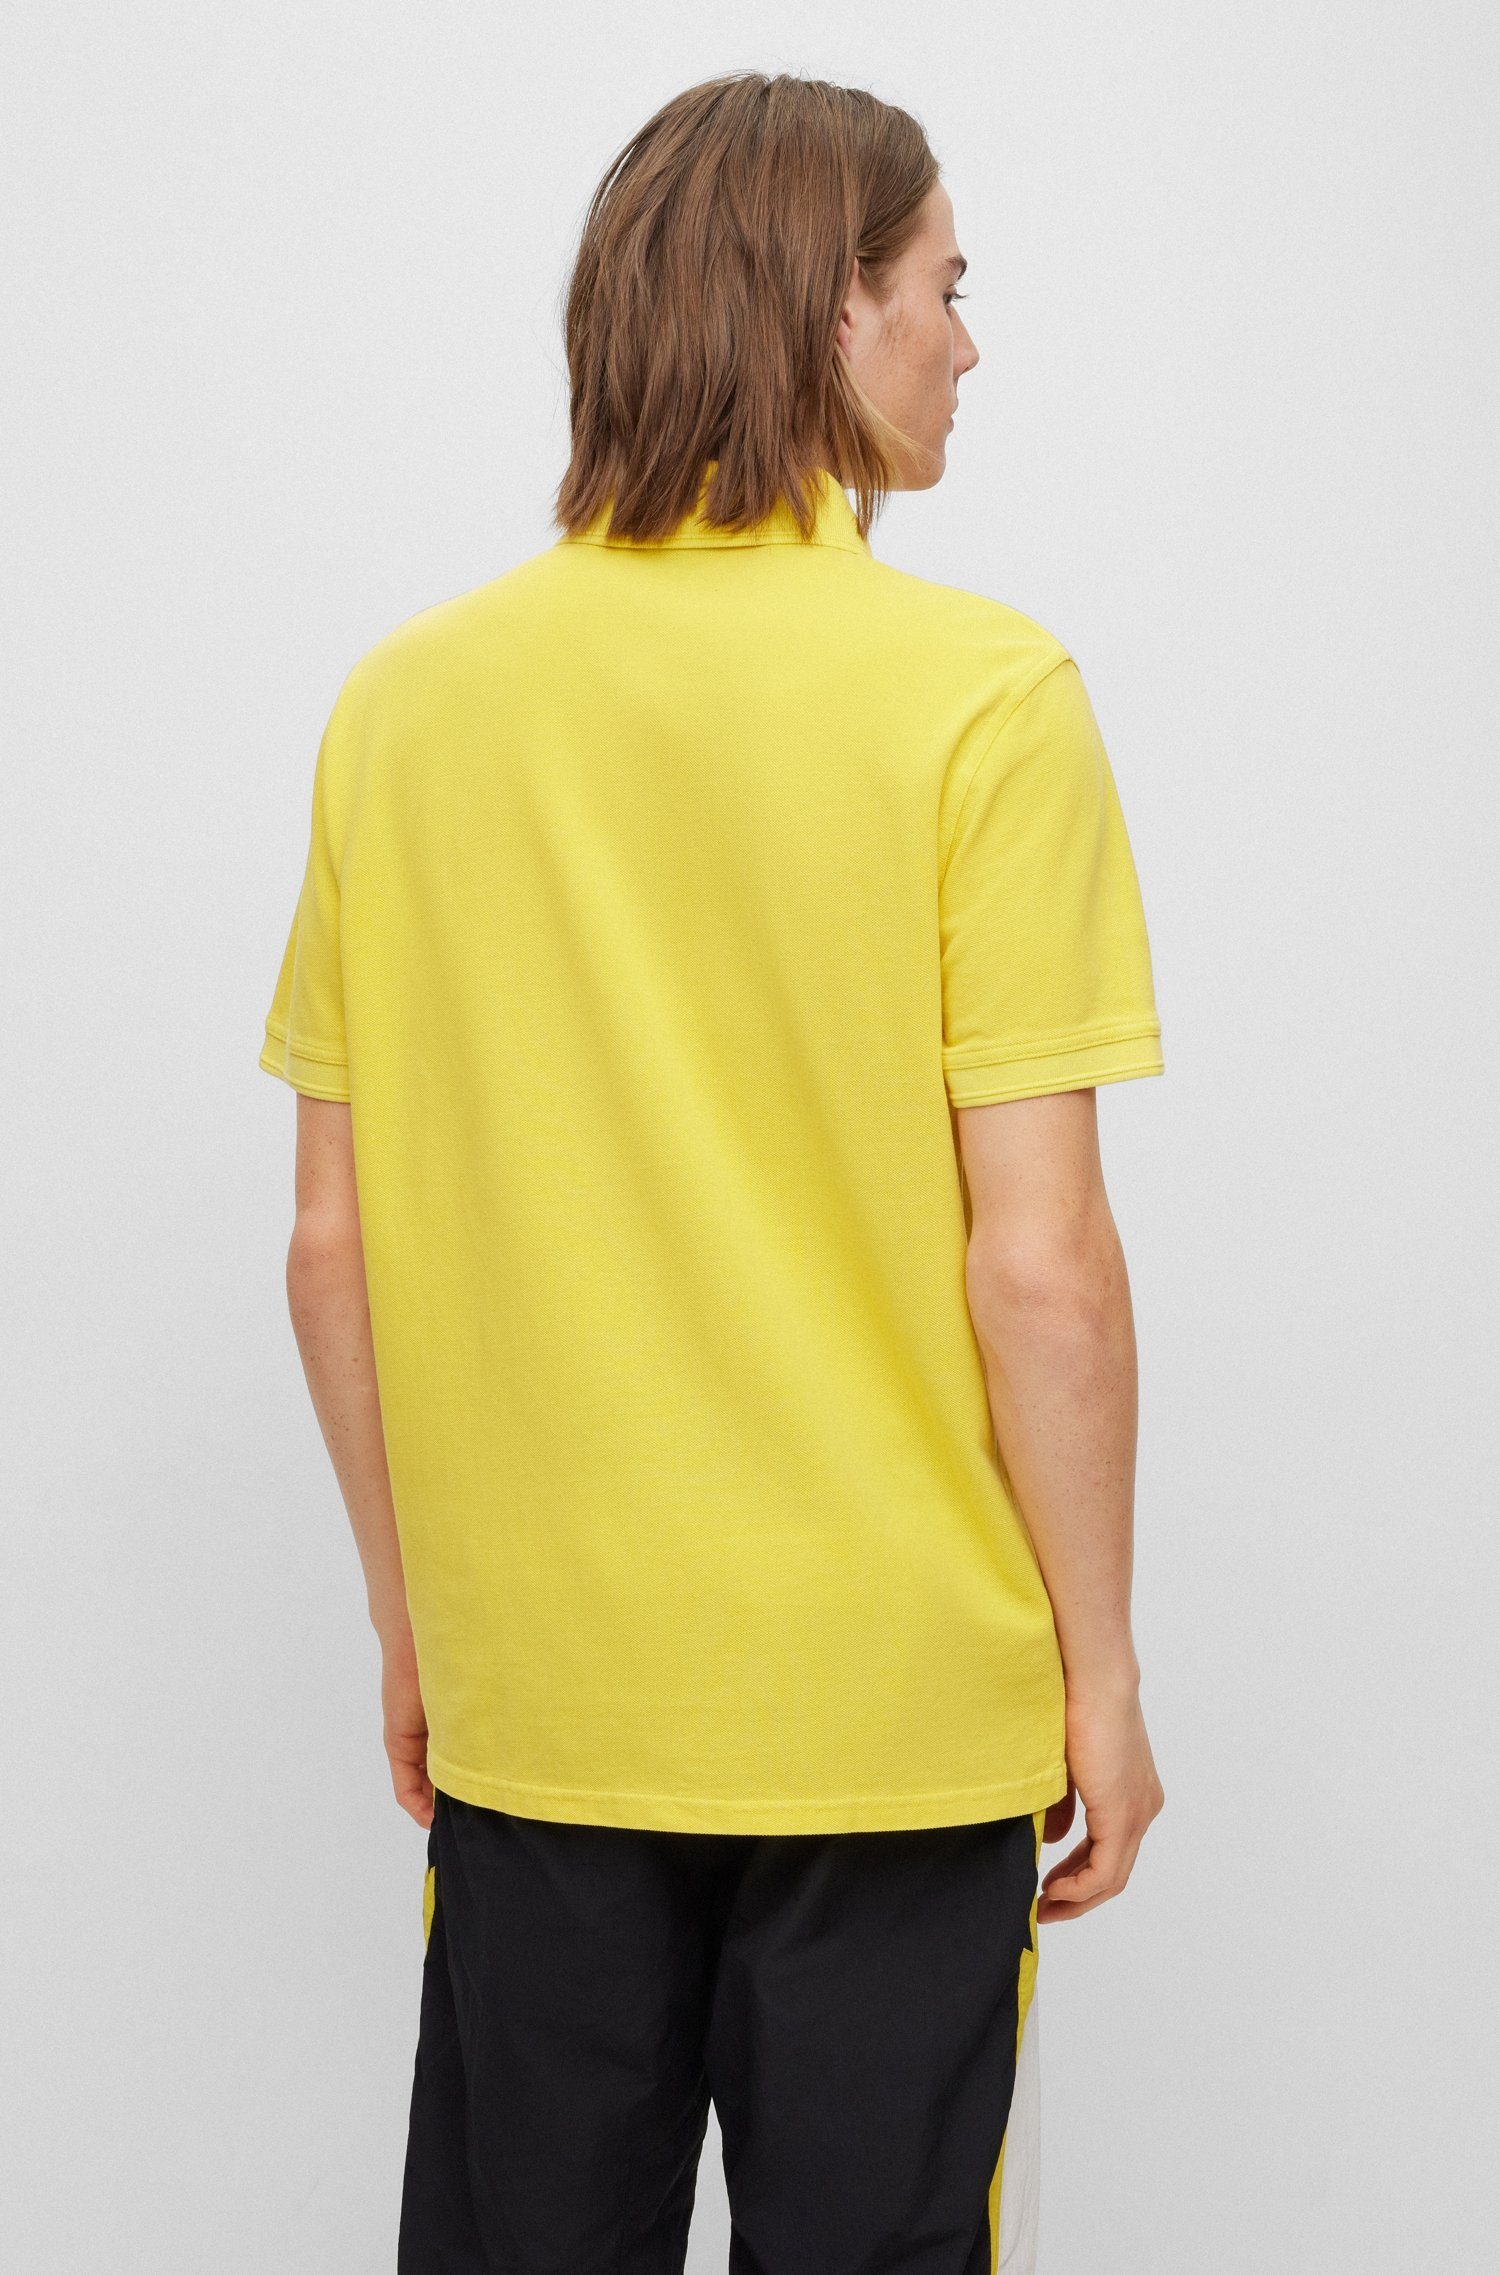 ORANGE Light/Pastel_Yellow BOSS Logoschriftzug Prime auf Brust 01 der dezentem Poloshirt 10203439 mit